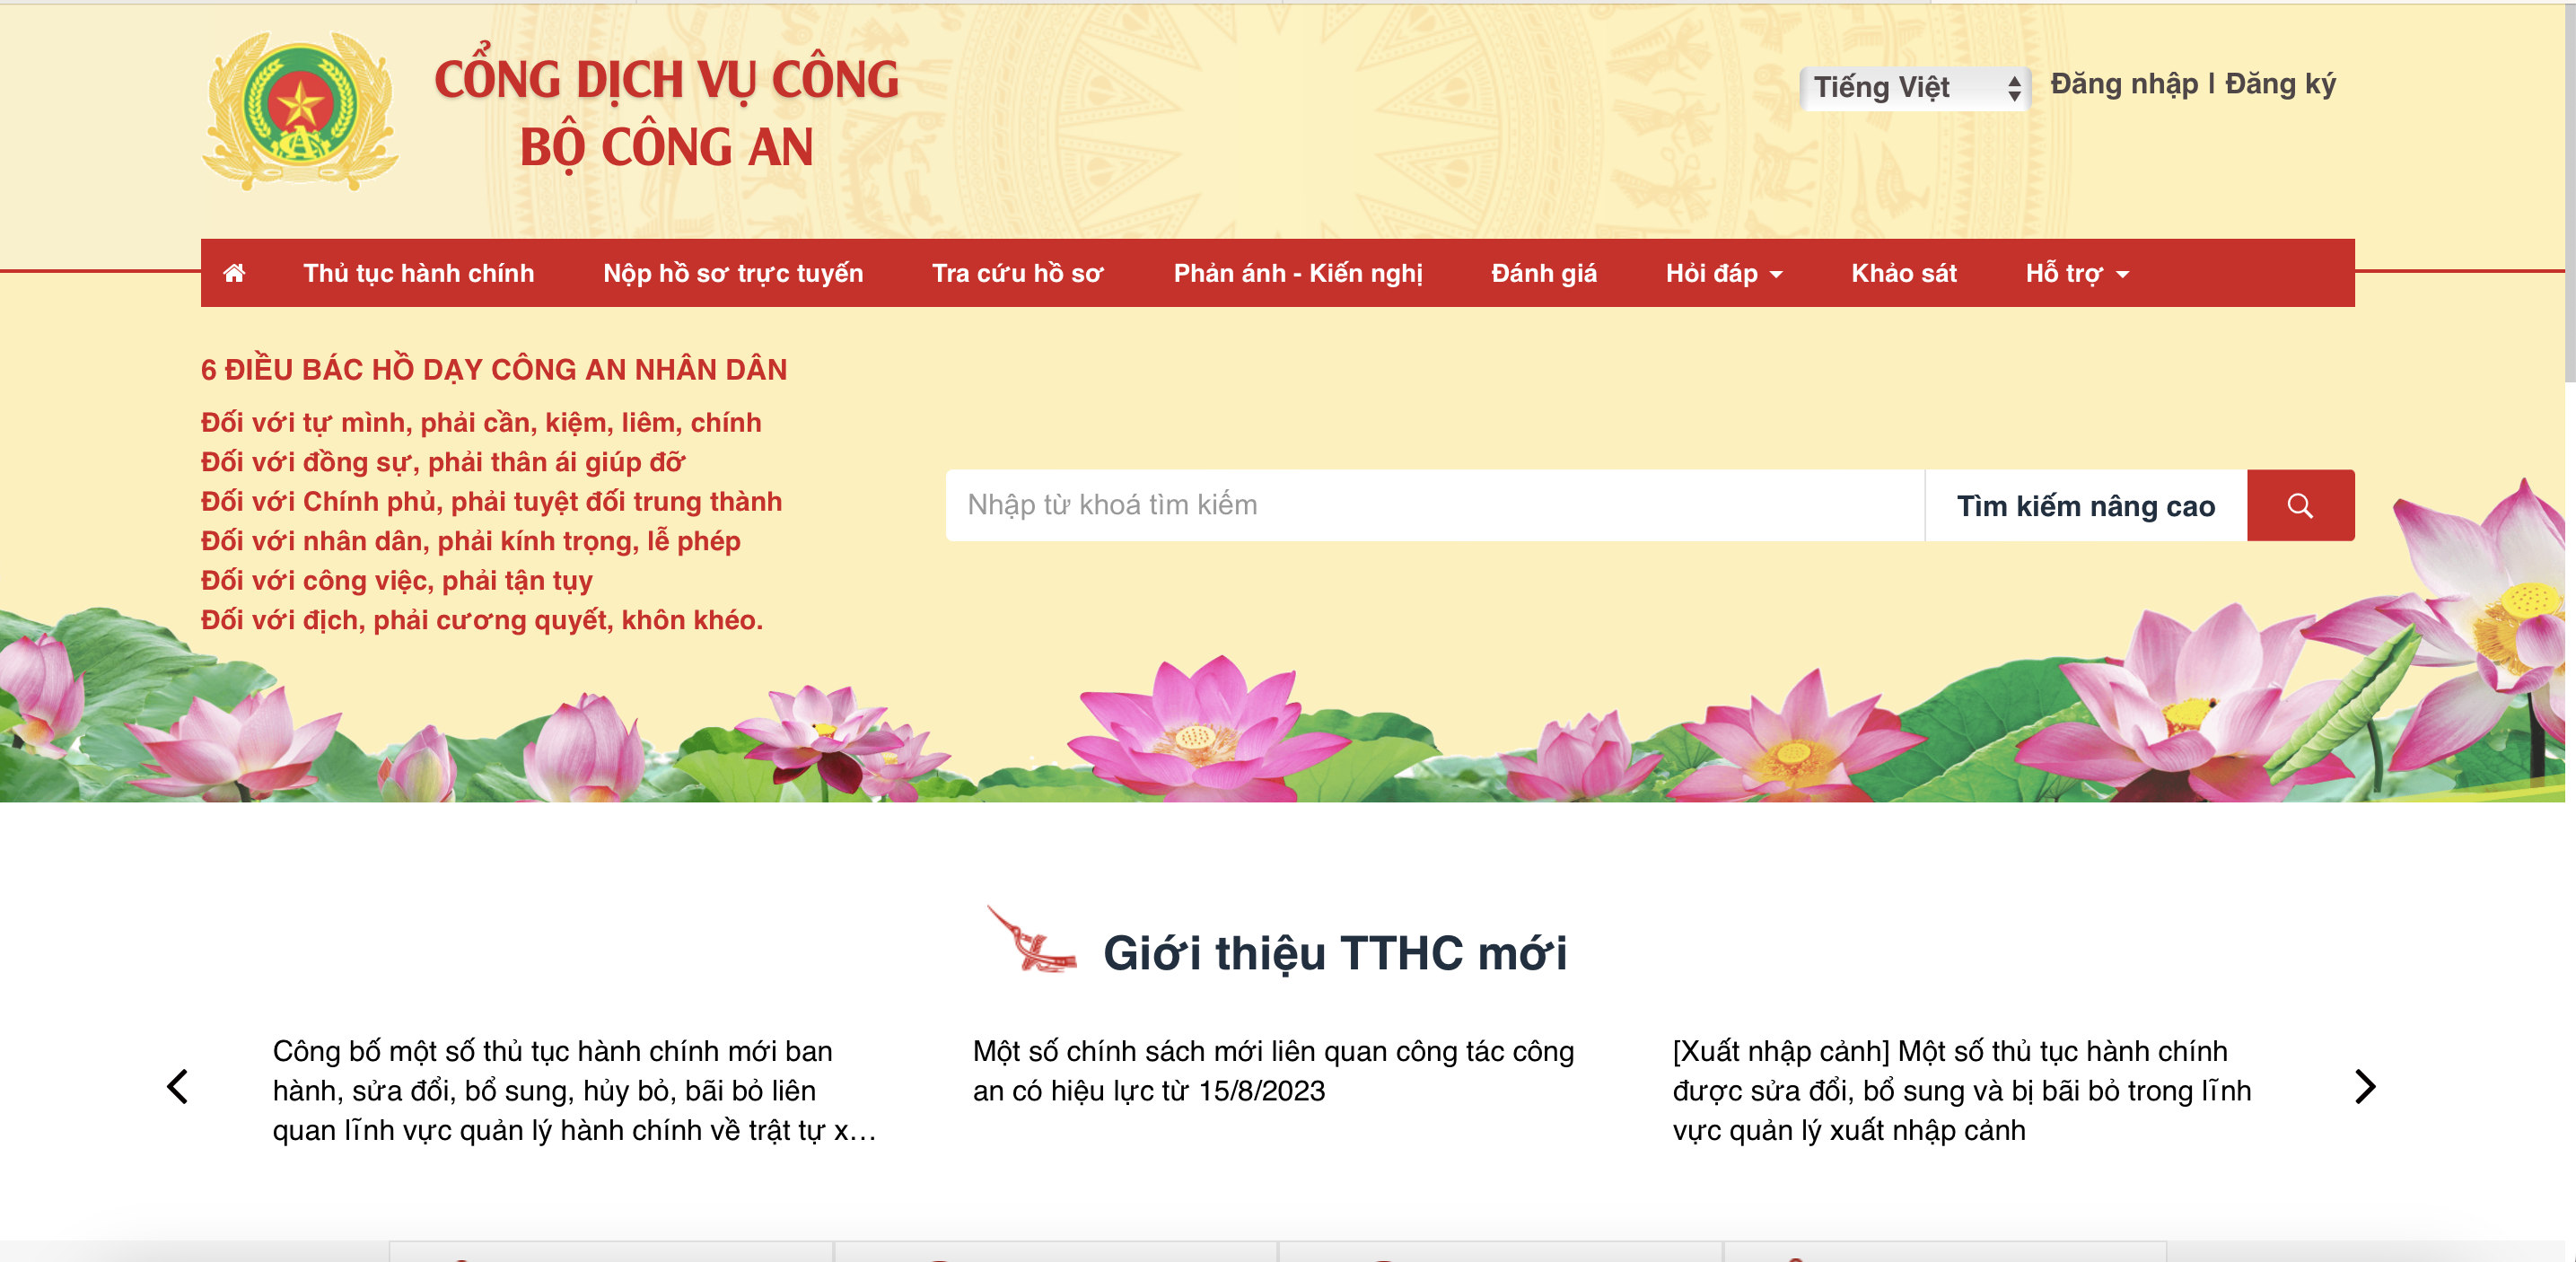 Cơ quan cấp giấy miễn thị thực cho người nước ngoài ở Việt Nam